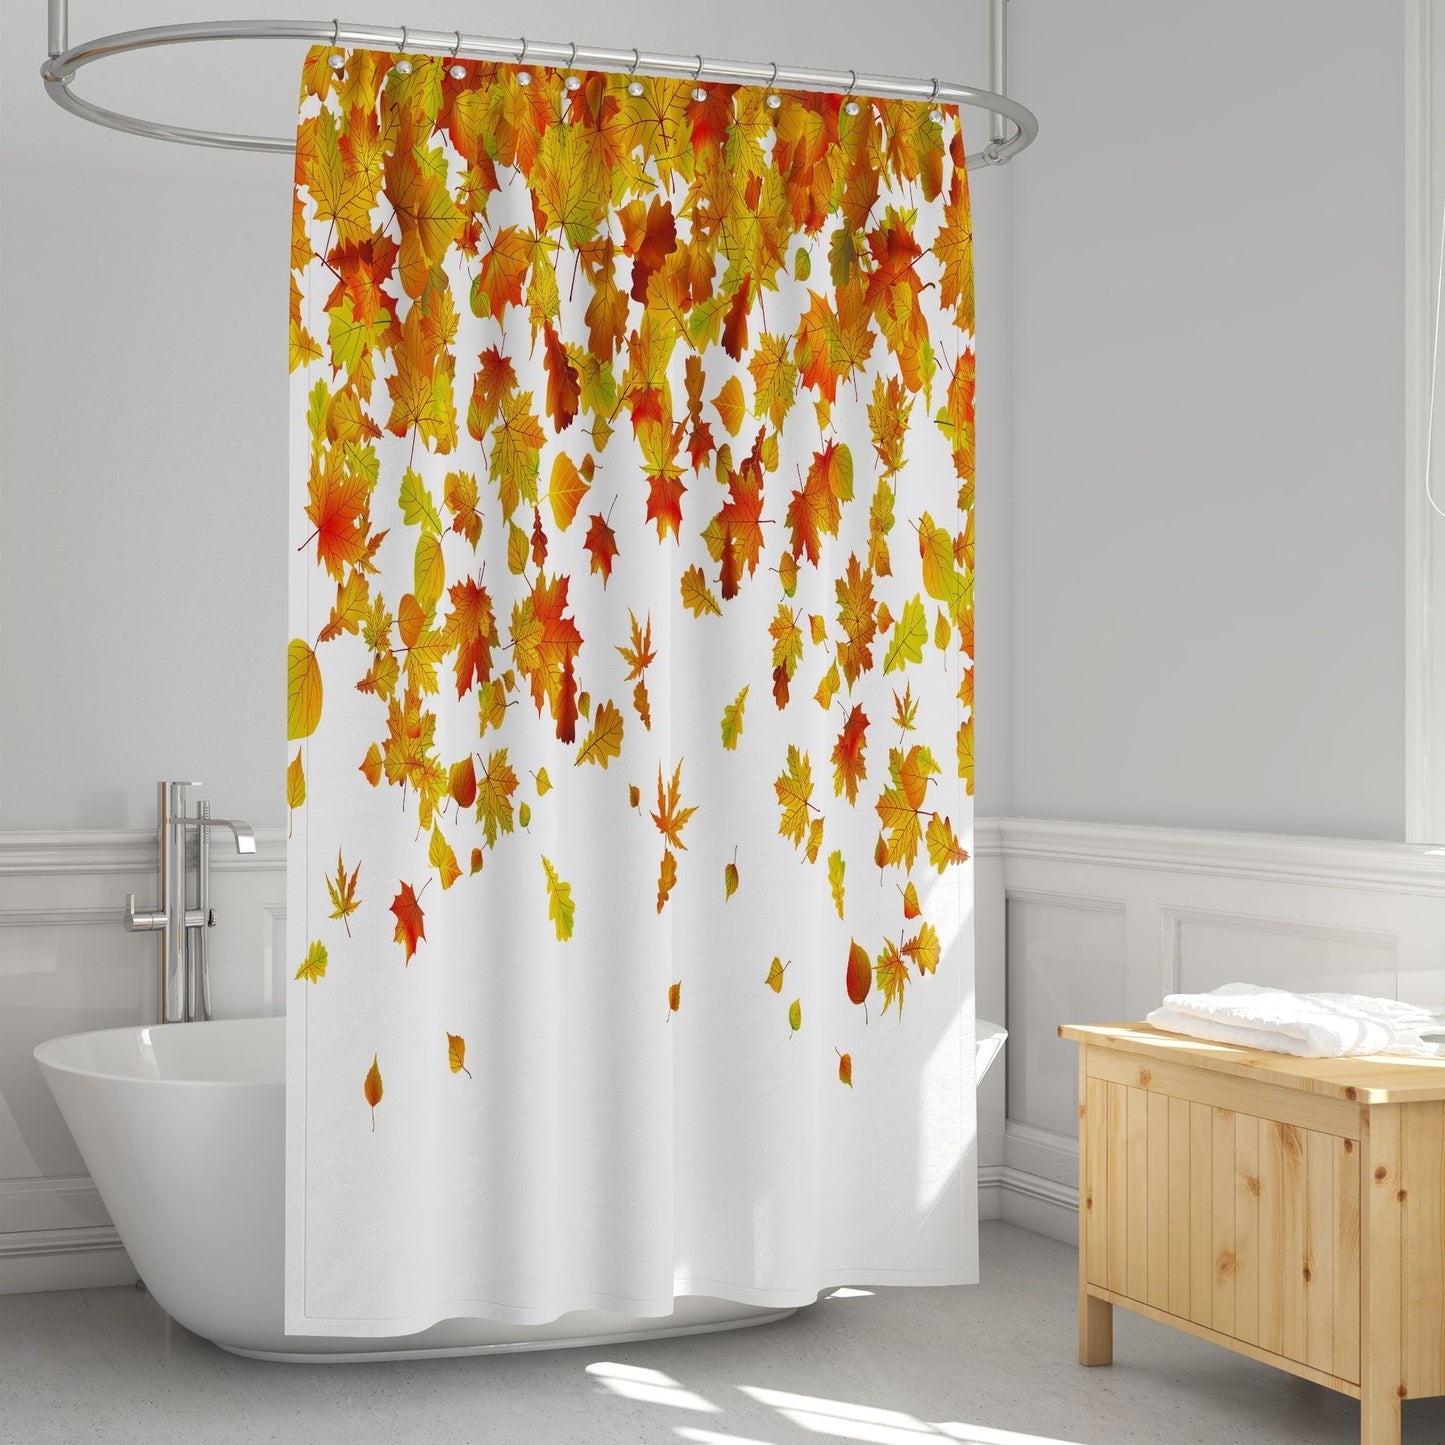 Golden Falling Maple Leaf Shower Curtain | Maple Leaf Bathroom Curtain